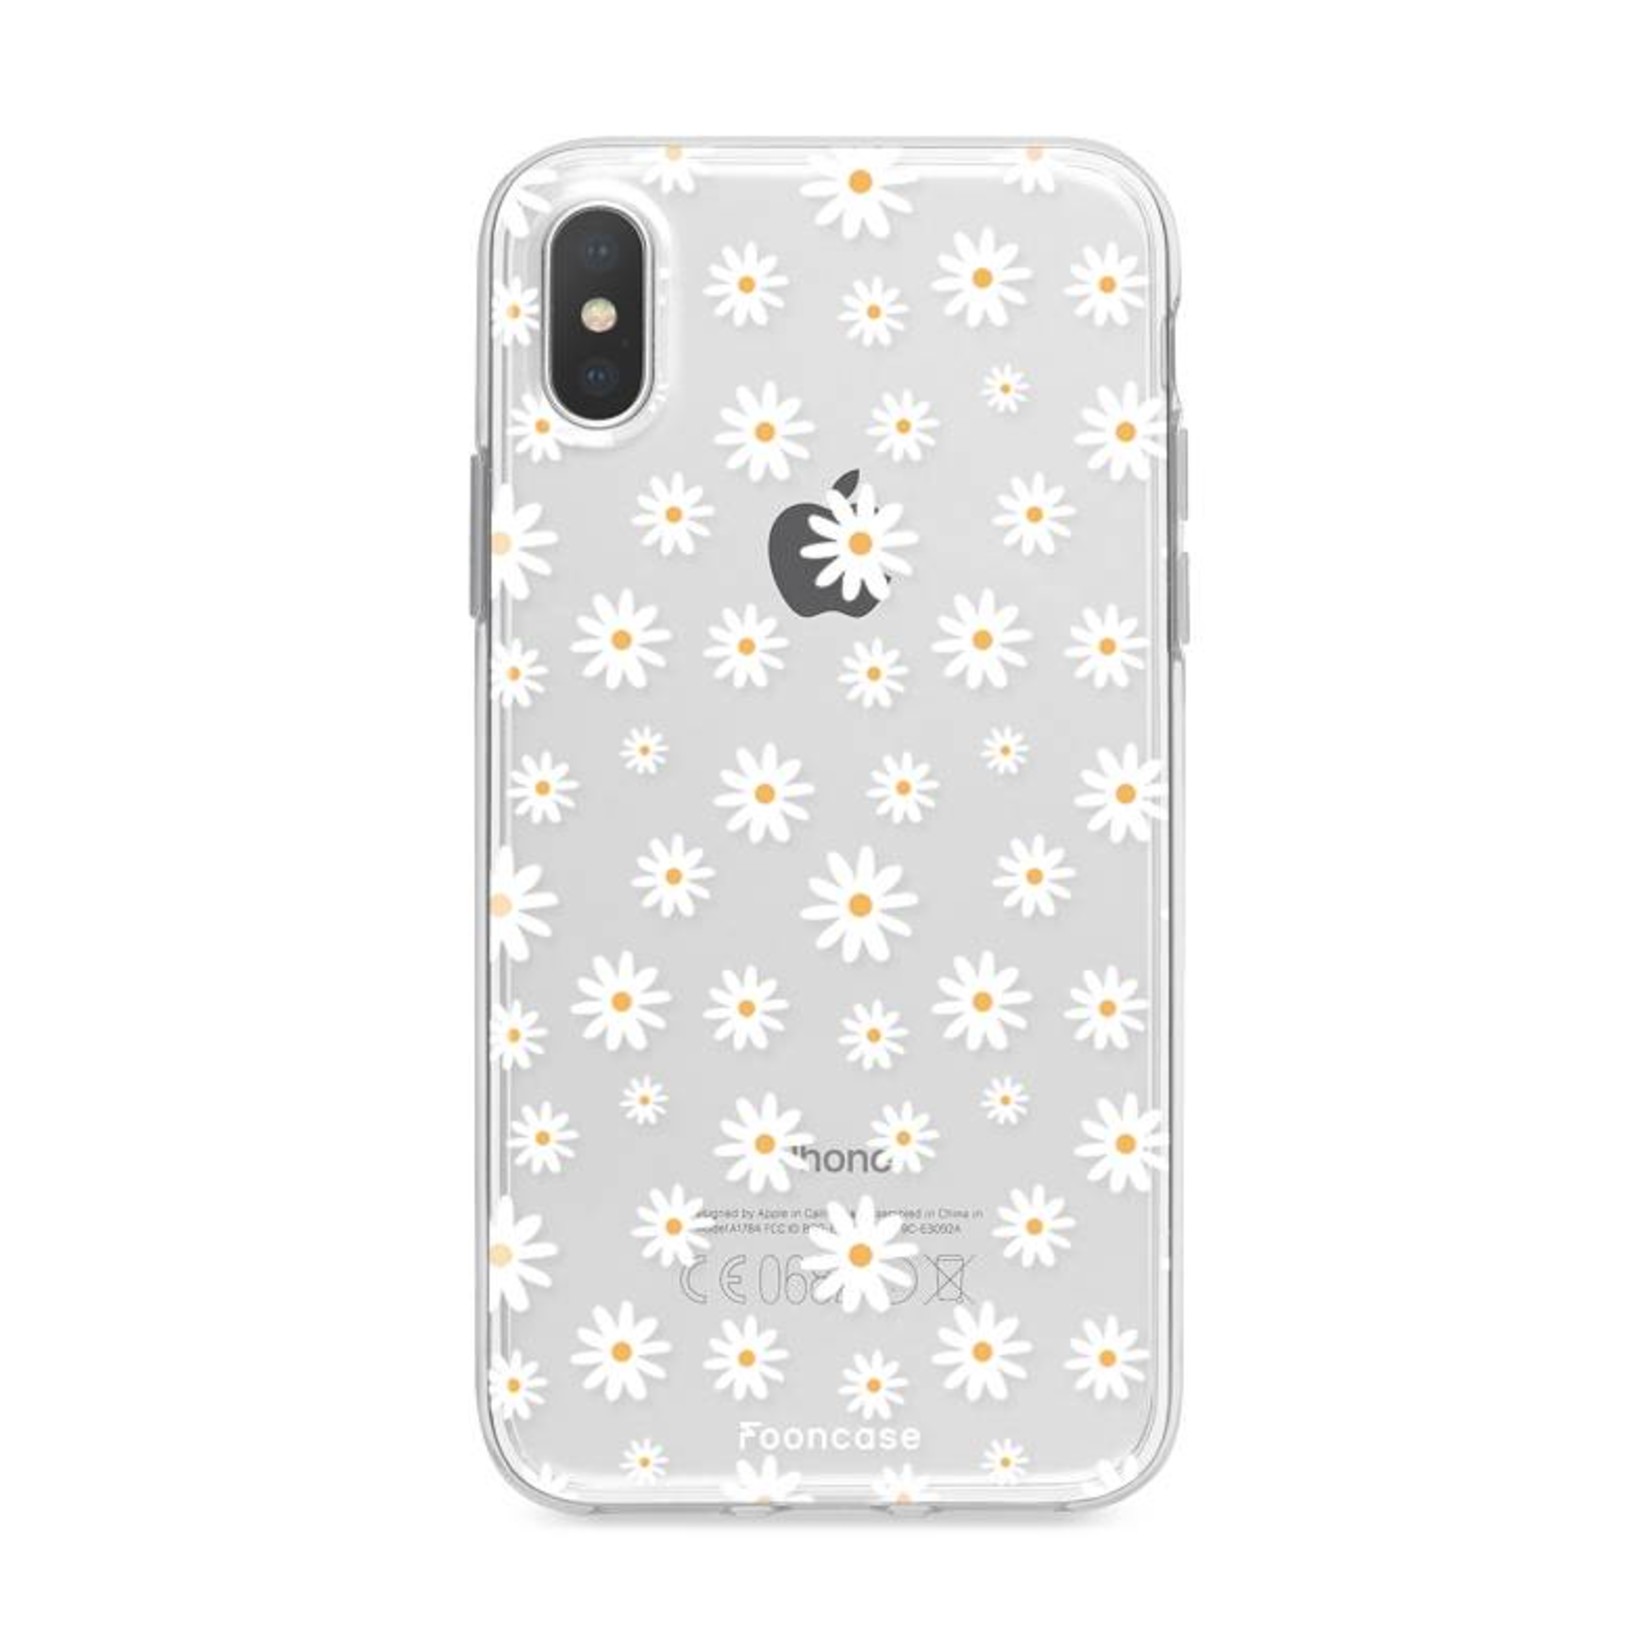 FOONCASE Iphone X Handyhülle - Gänseblümchen